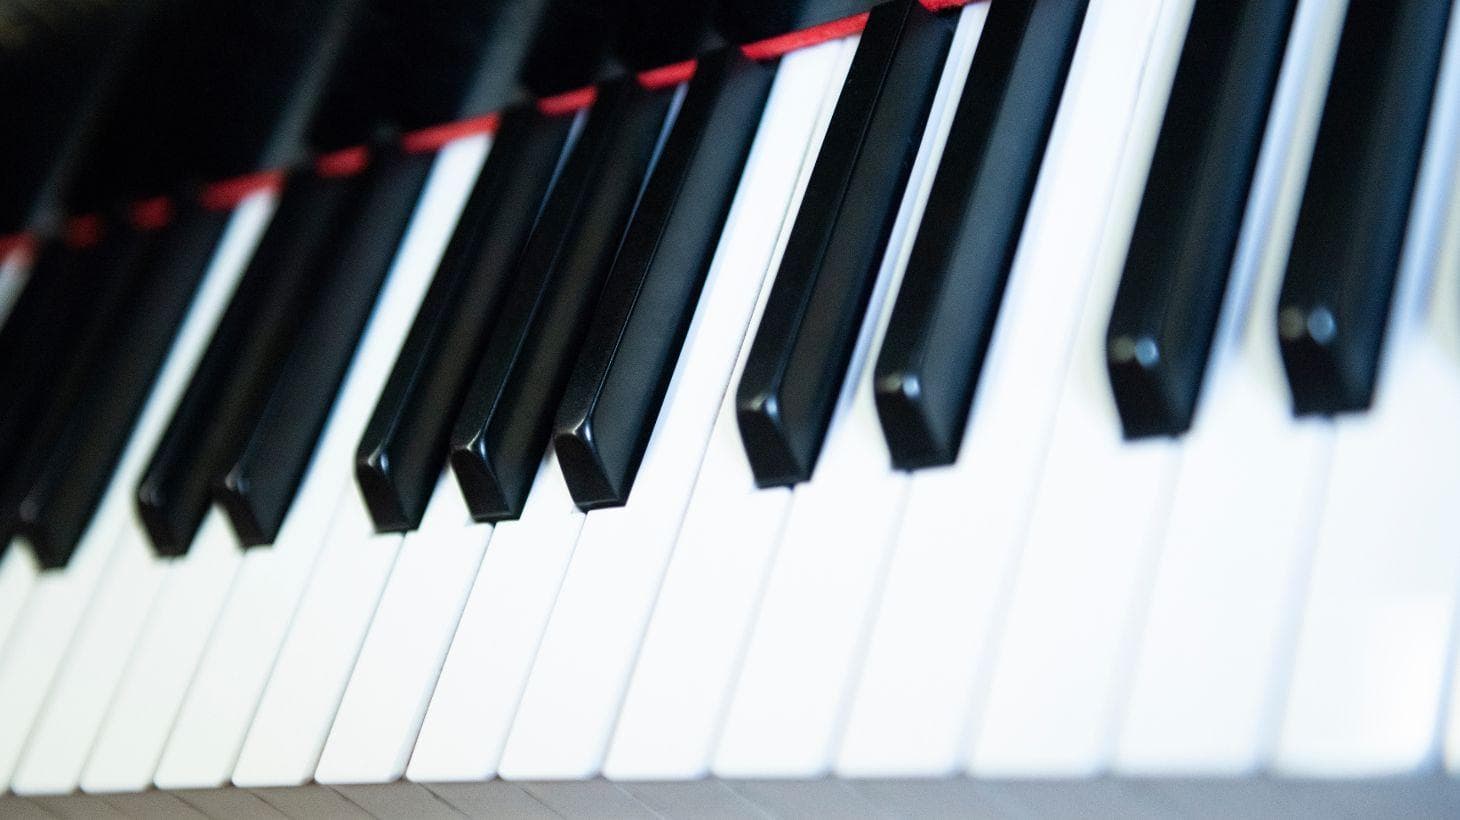 Piano closeup.